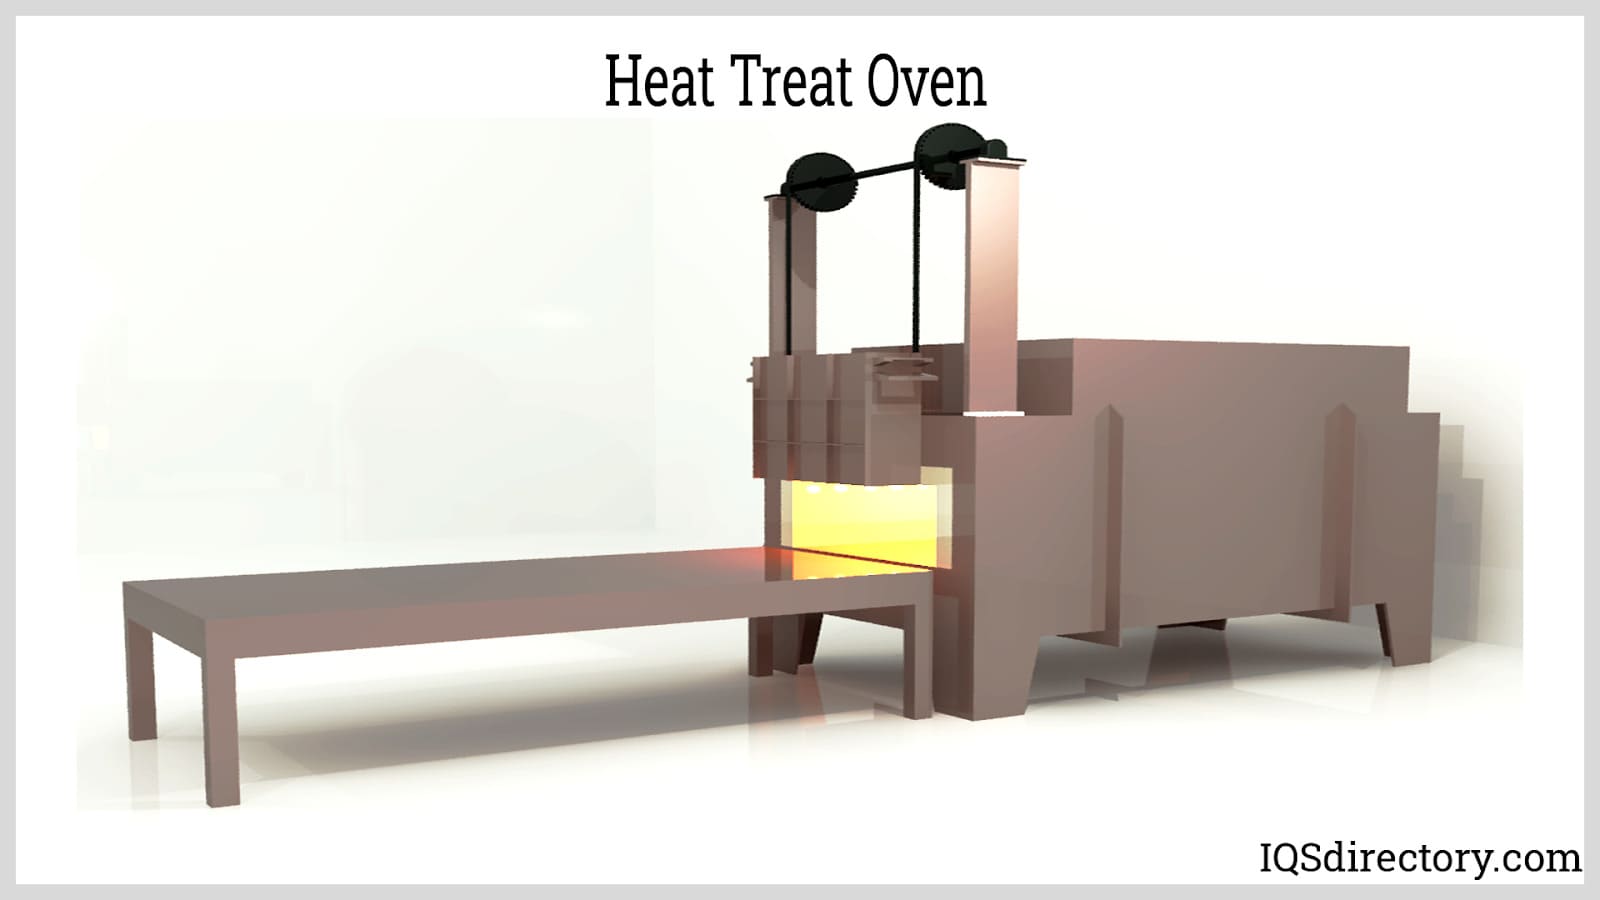 Heat Treat Oven